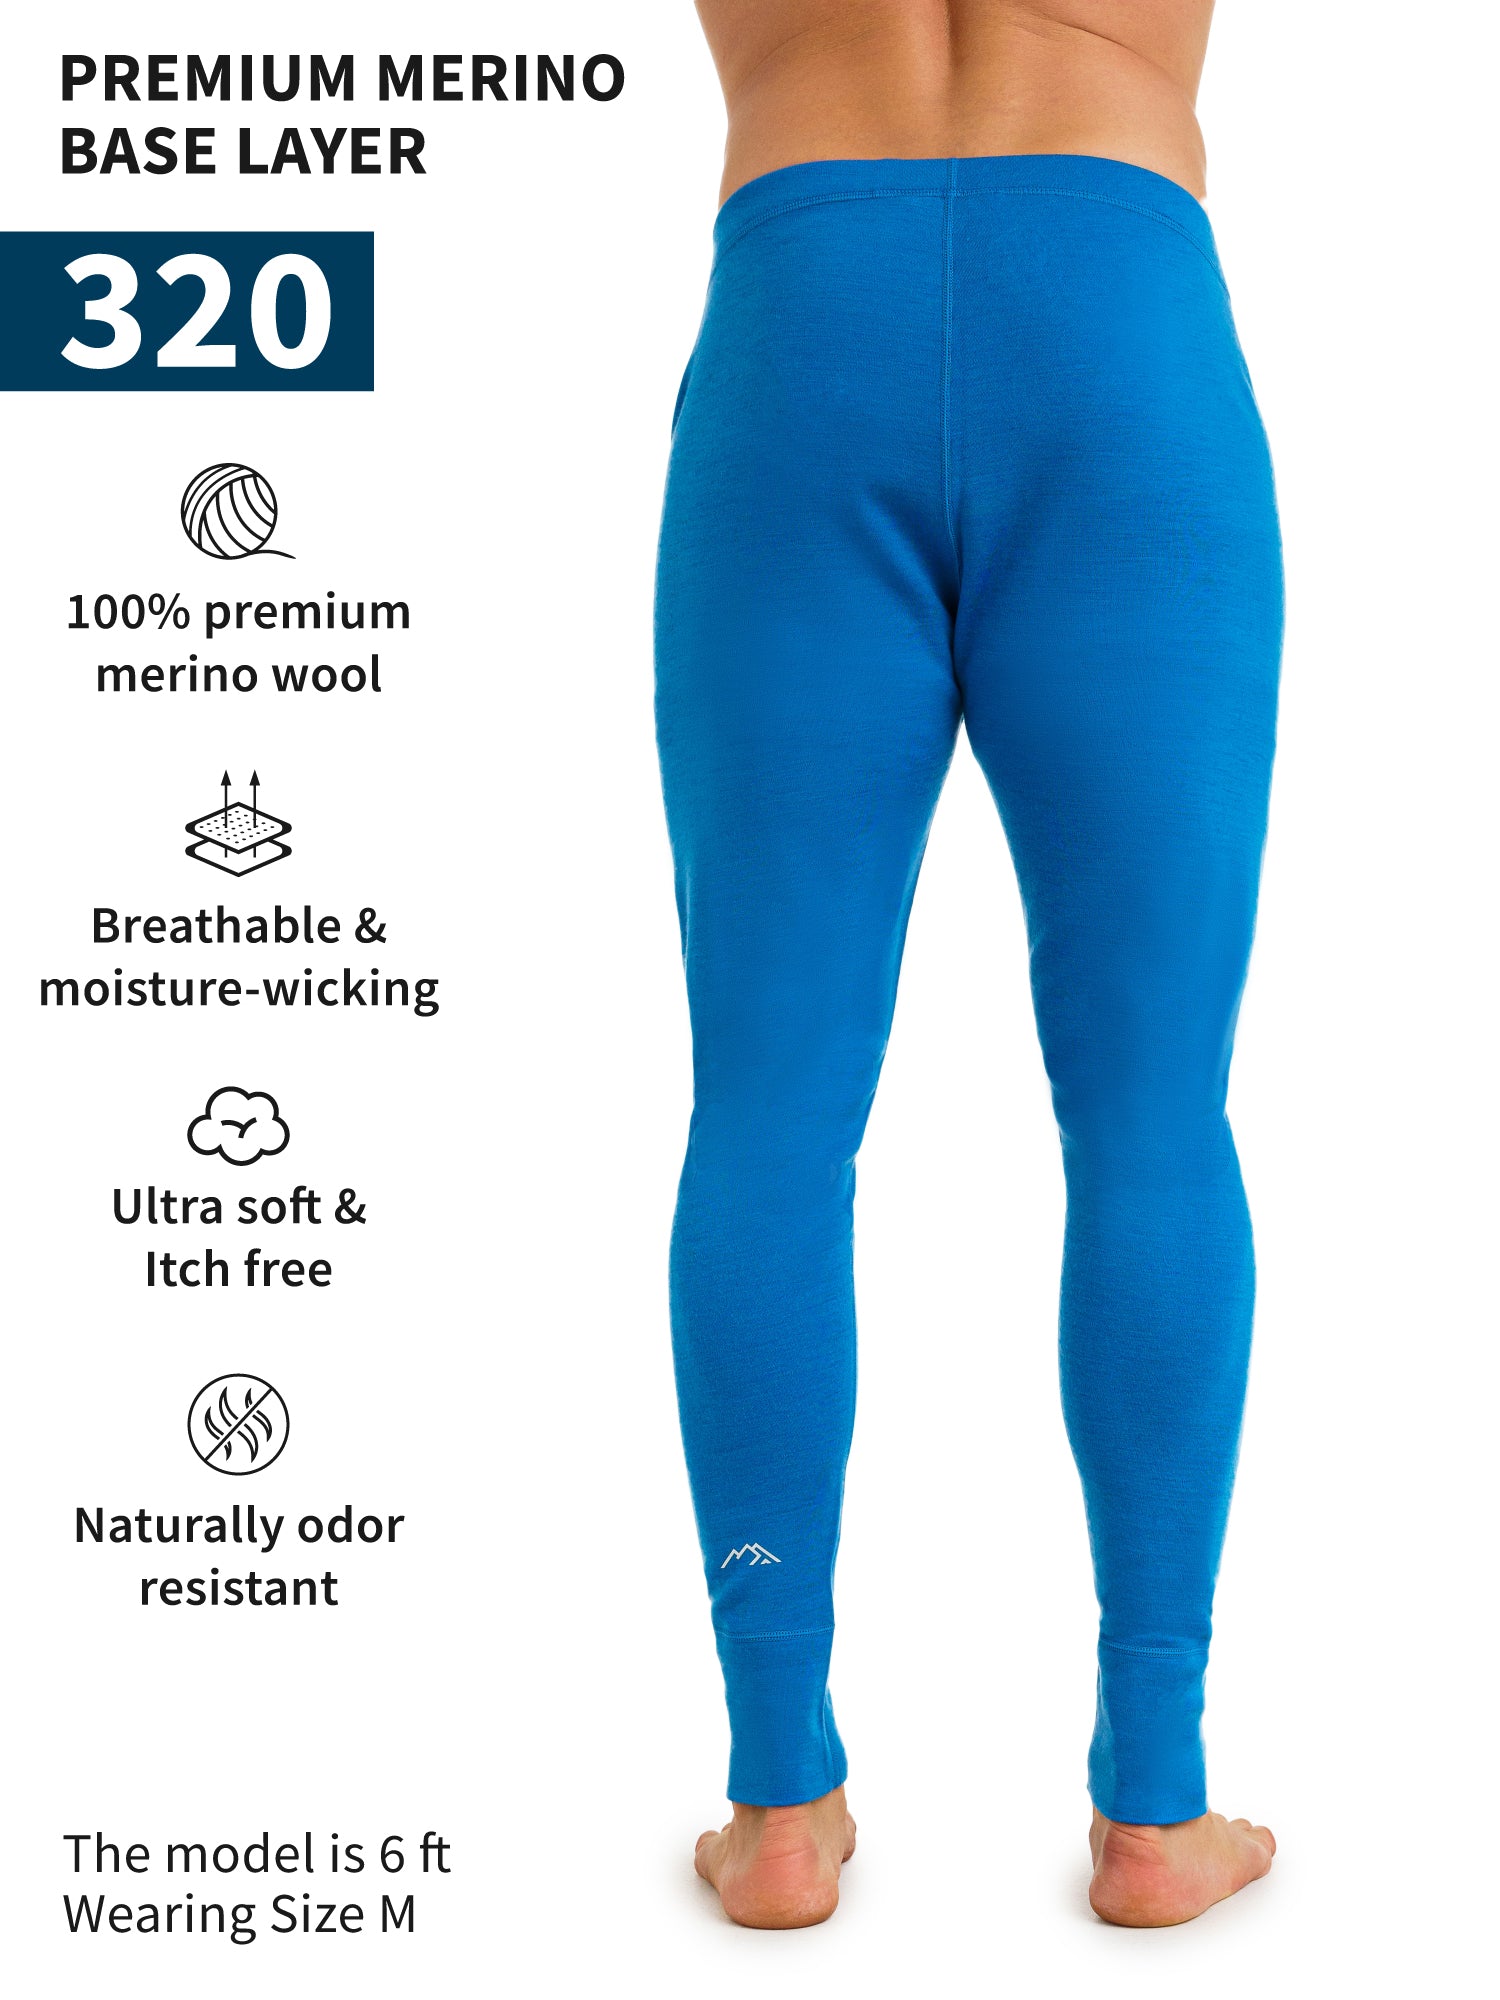 Men's Merino Wool Pants - Camel Lightweight Base Layer